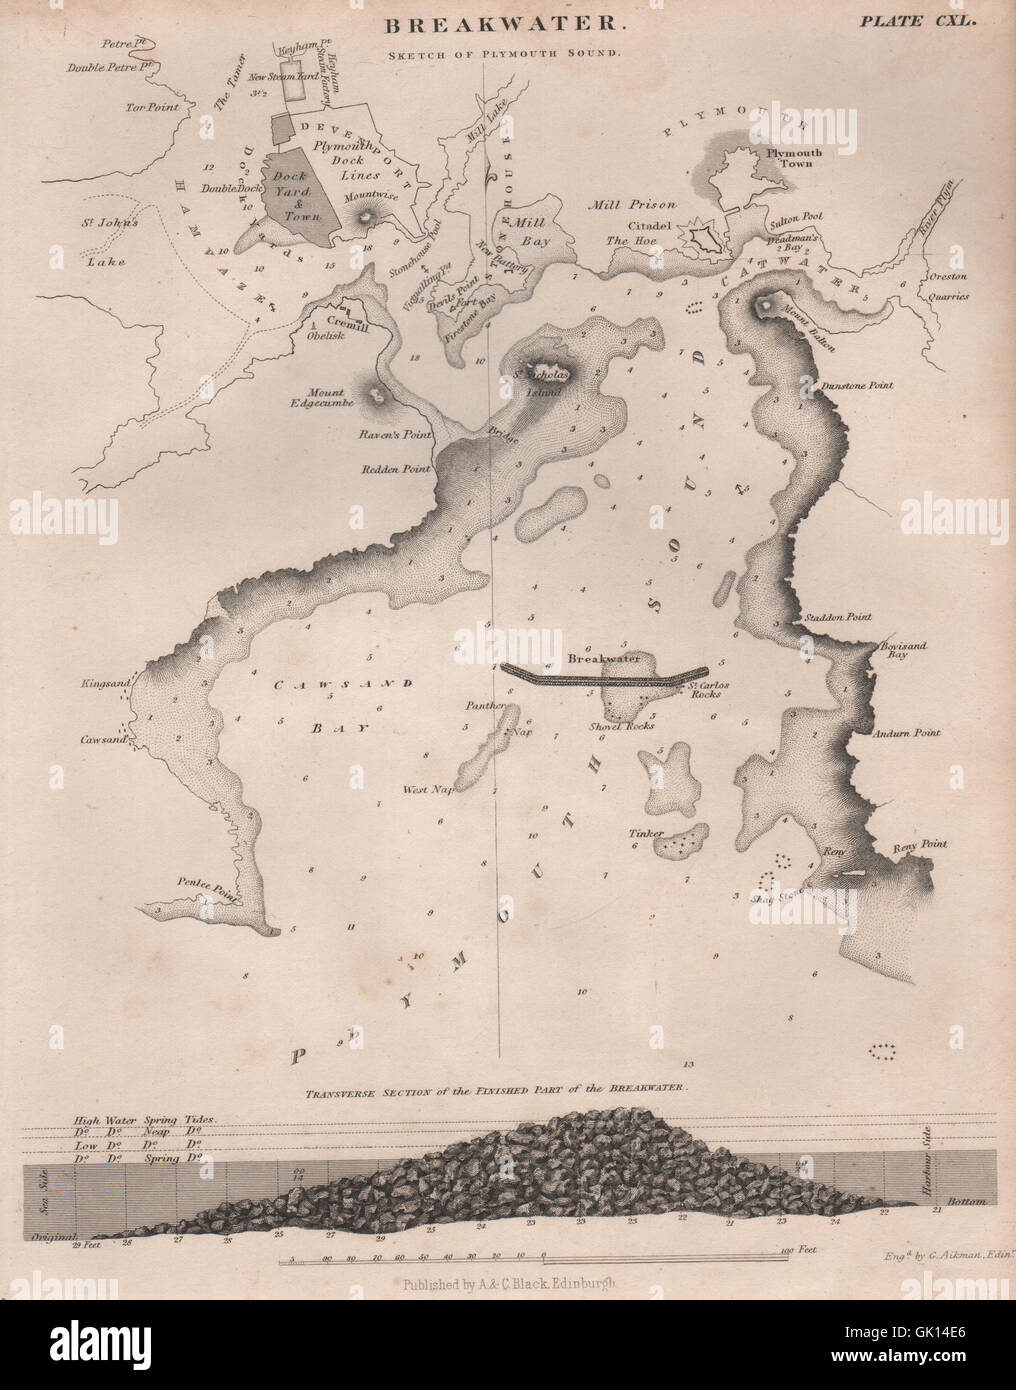 PLYMOUTH SOUND. Wellenbrecher-Abschnitt. Devonport. BRITANNICA, 1860 Antike Landkarte Stockfoto